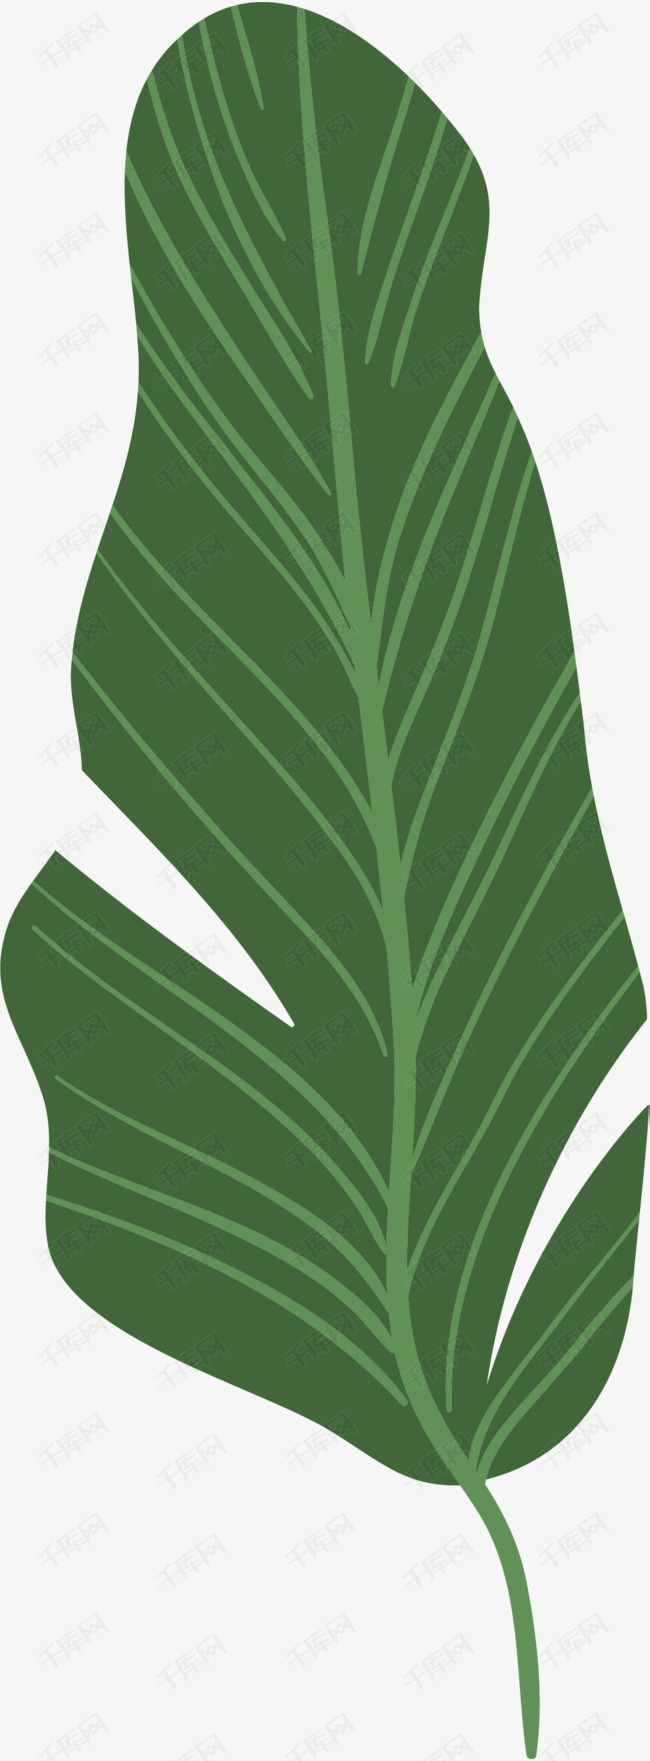 绿色枝桠经脉芭蕉叶的素材免抠叶子卡通风格芭蕉叶矢量经脉枝桠芭蕉叶